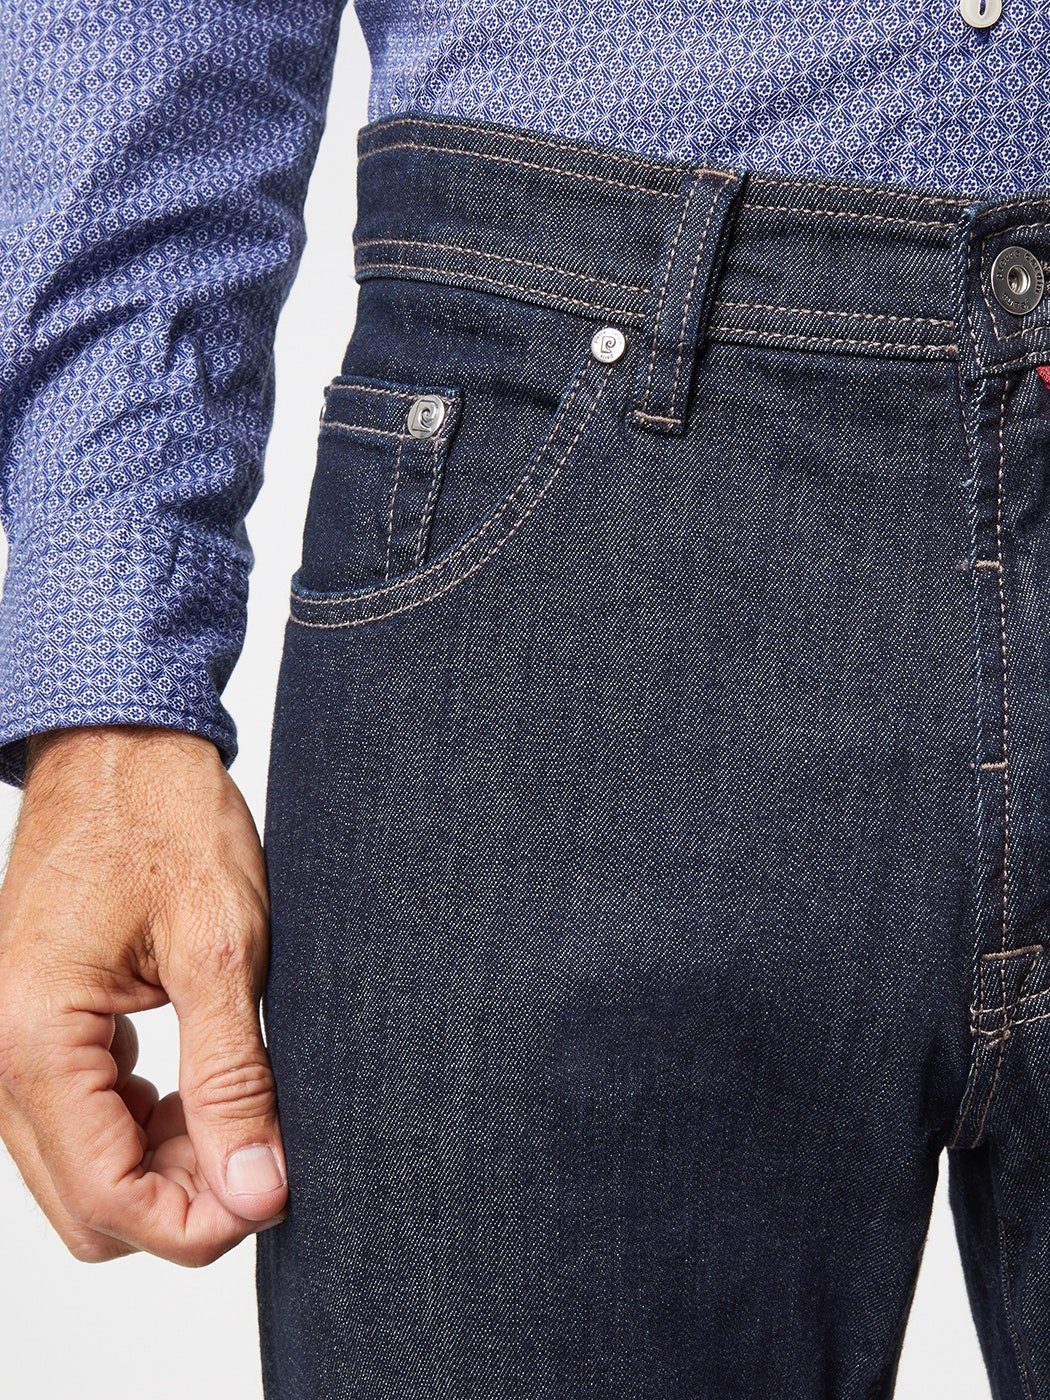 Pierre Cardin 5-Pocket-Jeans PIERRE CARDIN DEAUVILLE - blue rinsed Konfektionsgrö 7280.04 dark 3880